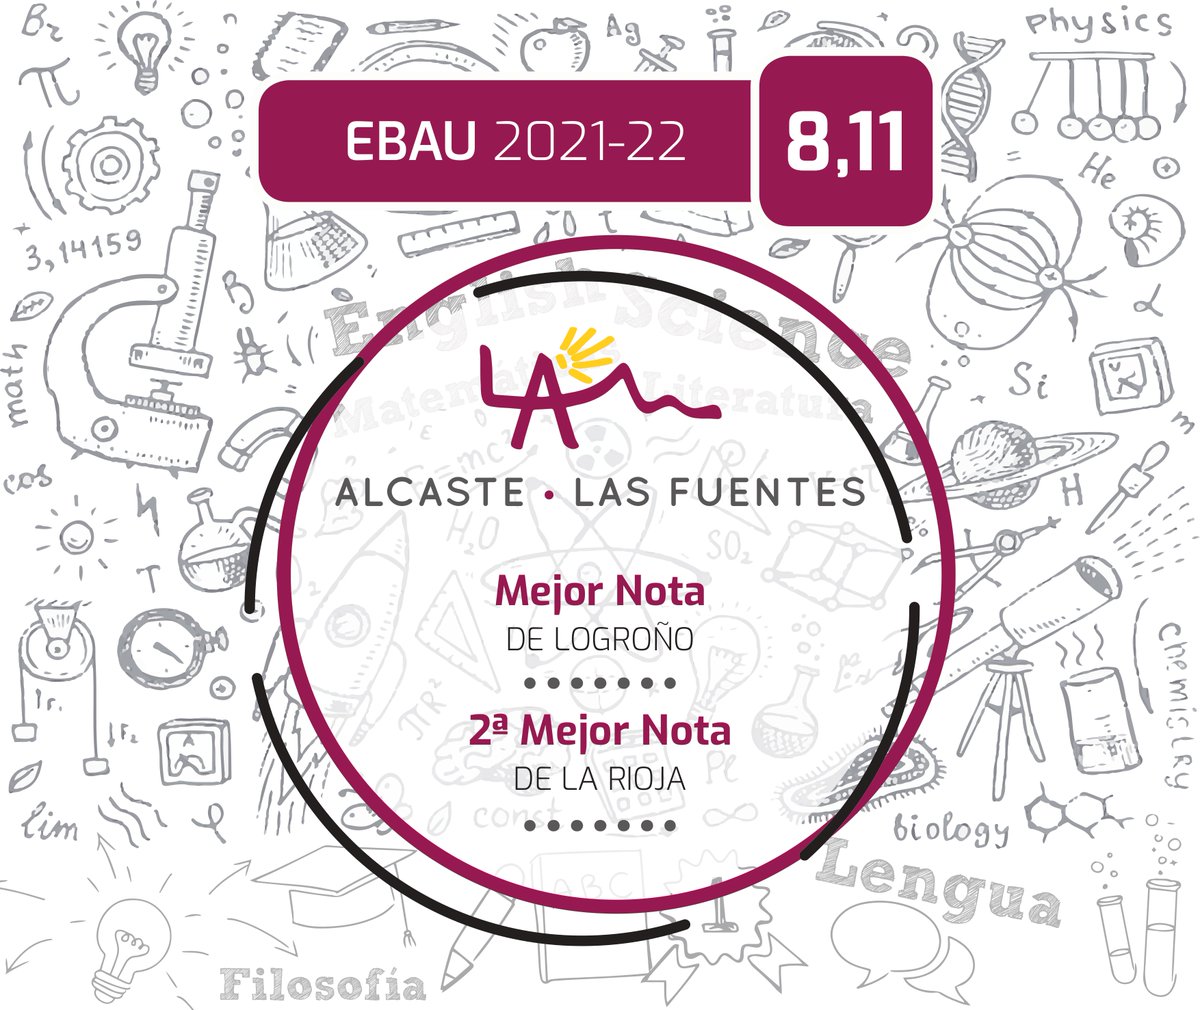 𝗔𝗹𝗰𝗮𝘀𝘁𝗲-𝗟𝗮𝘀 𝗙𝘂𝗲𝗻𝘁𝗲𝘀 obtienen la mejor nota de un colegio concertado en la EBAU 2022 de La Rioja por detrás del Instituto Esteban Manuel Villegas de Nájera. #colegioalcaste #alcaste #EBAU